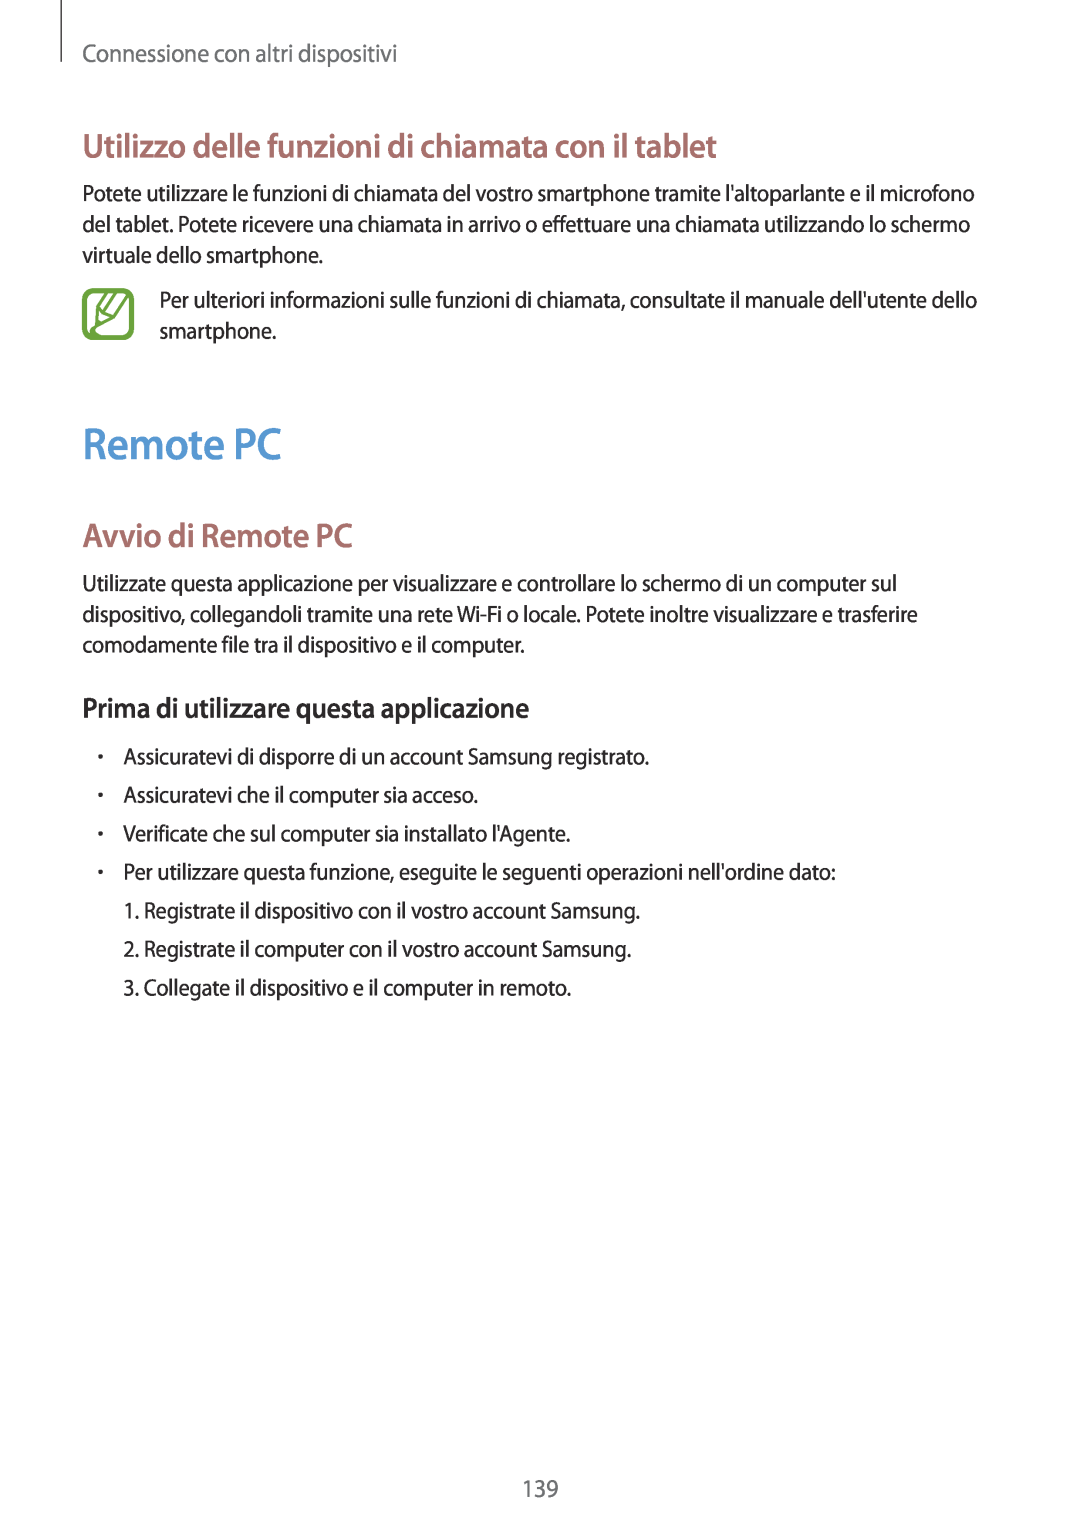 Samsung SM-T700NZWAITV, SM-T700NZWATUR manual Utilizzo delle funzioni di chiamata con il tablet, Avvio di Remote PC 